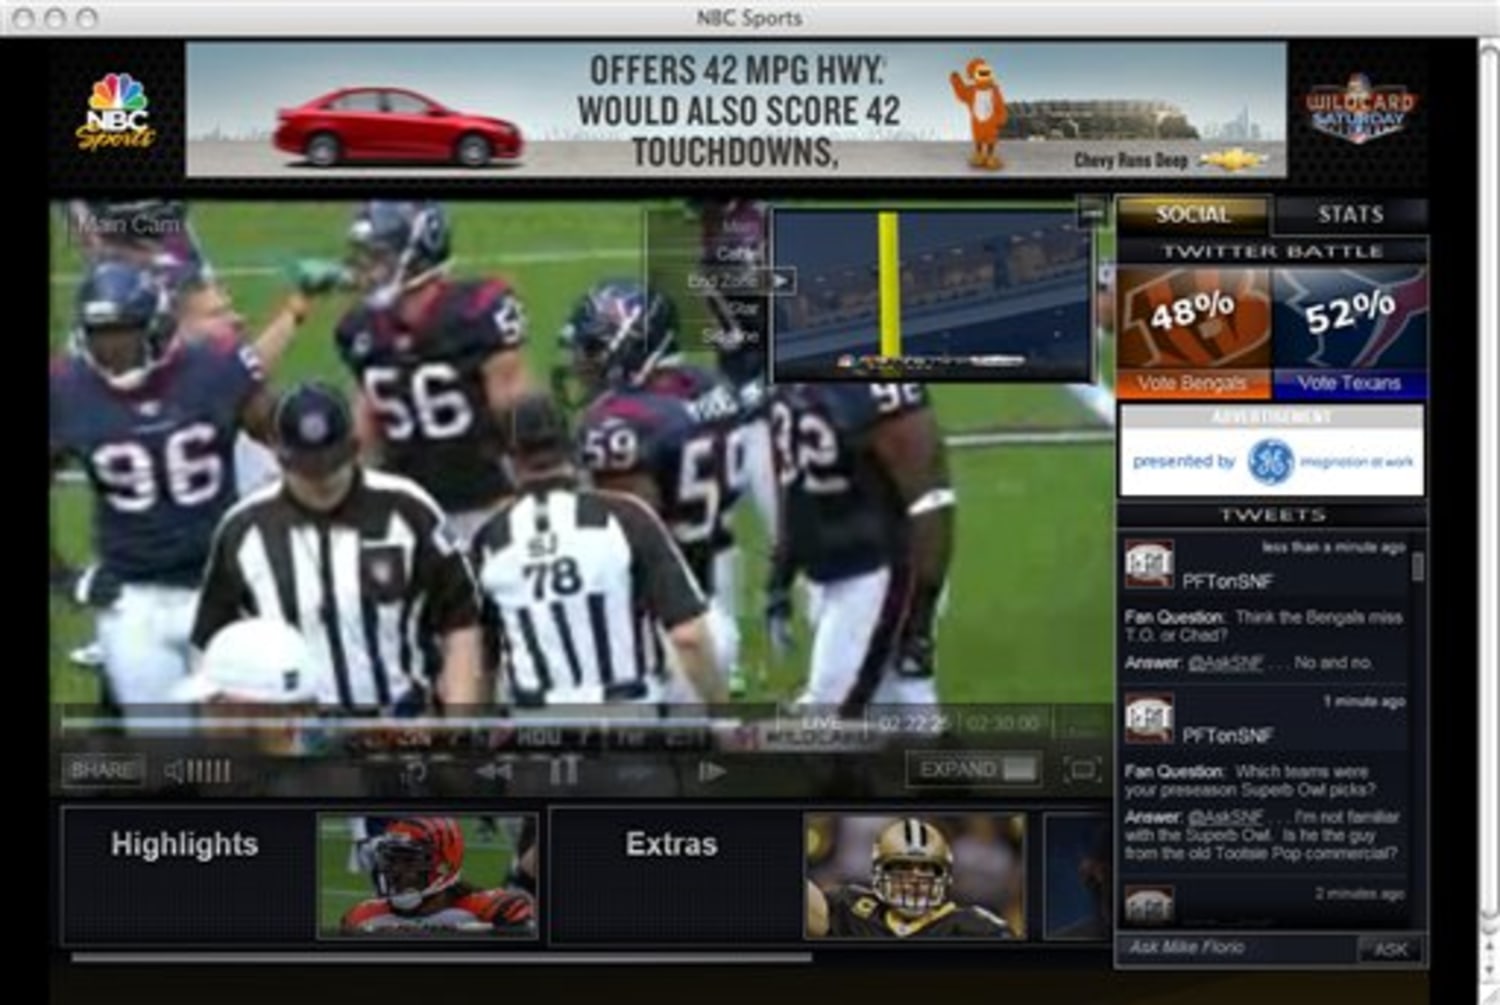 Super Bowl online decent, wont replace TV